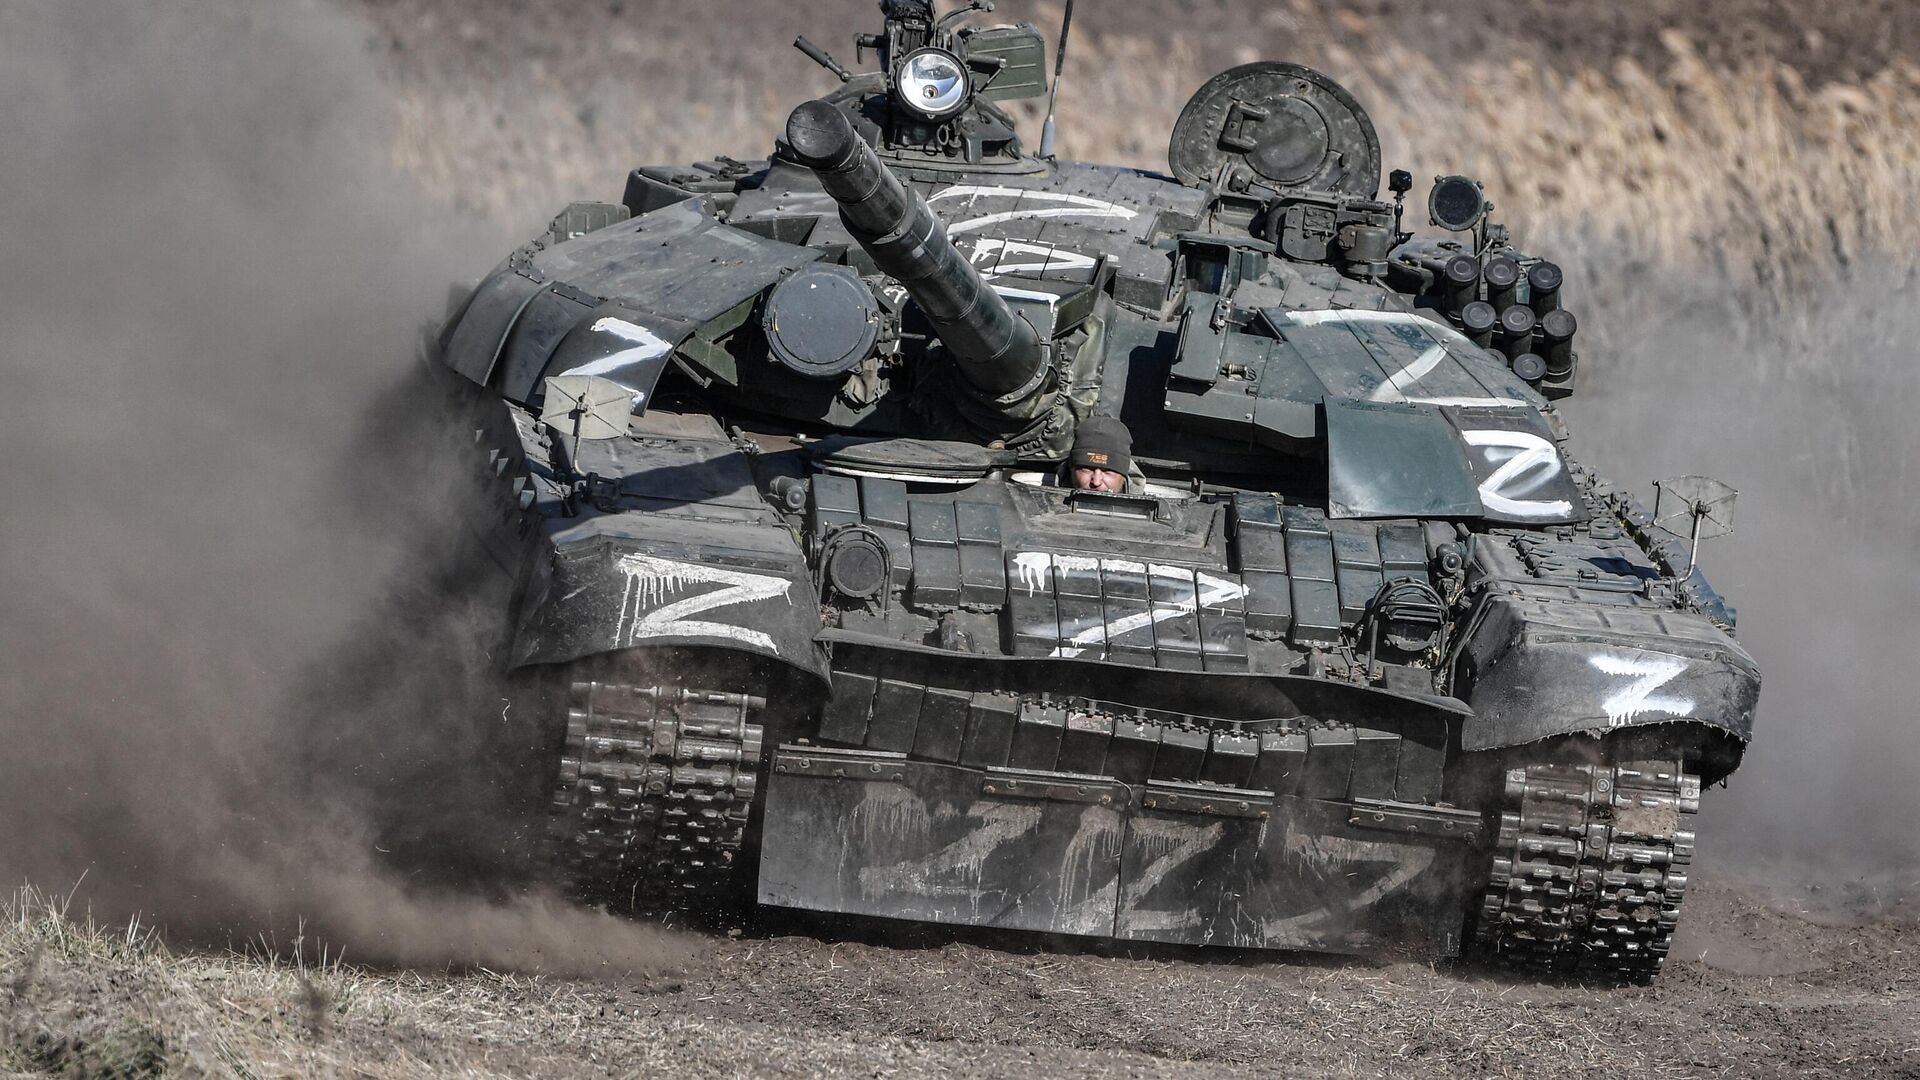 tank-t-72-posle-remontnyh-rabot-v-polevyh-usloviyah-b2p37aps-1668601621.jpg